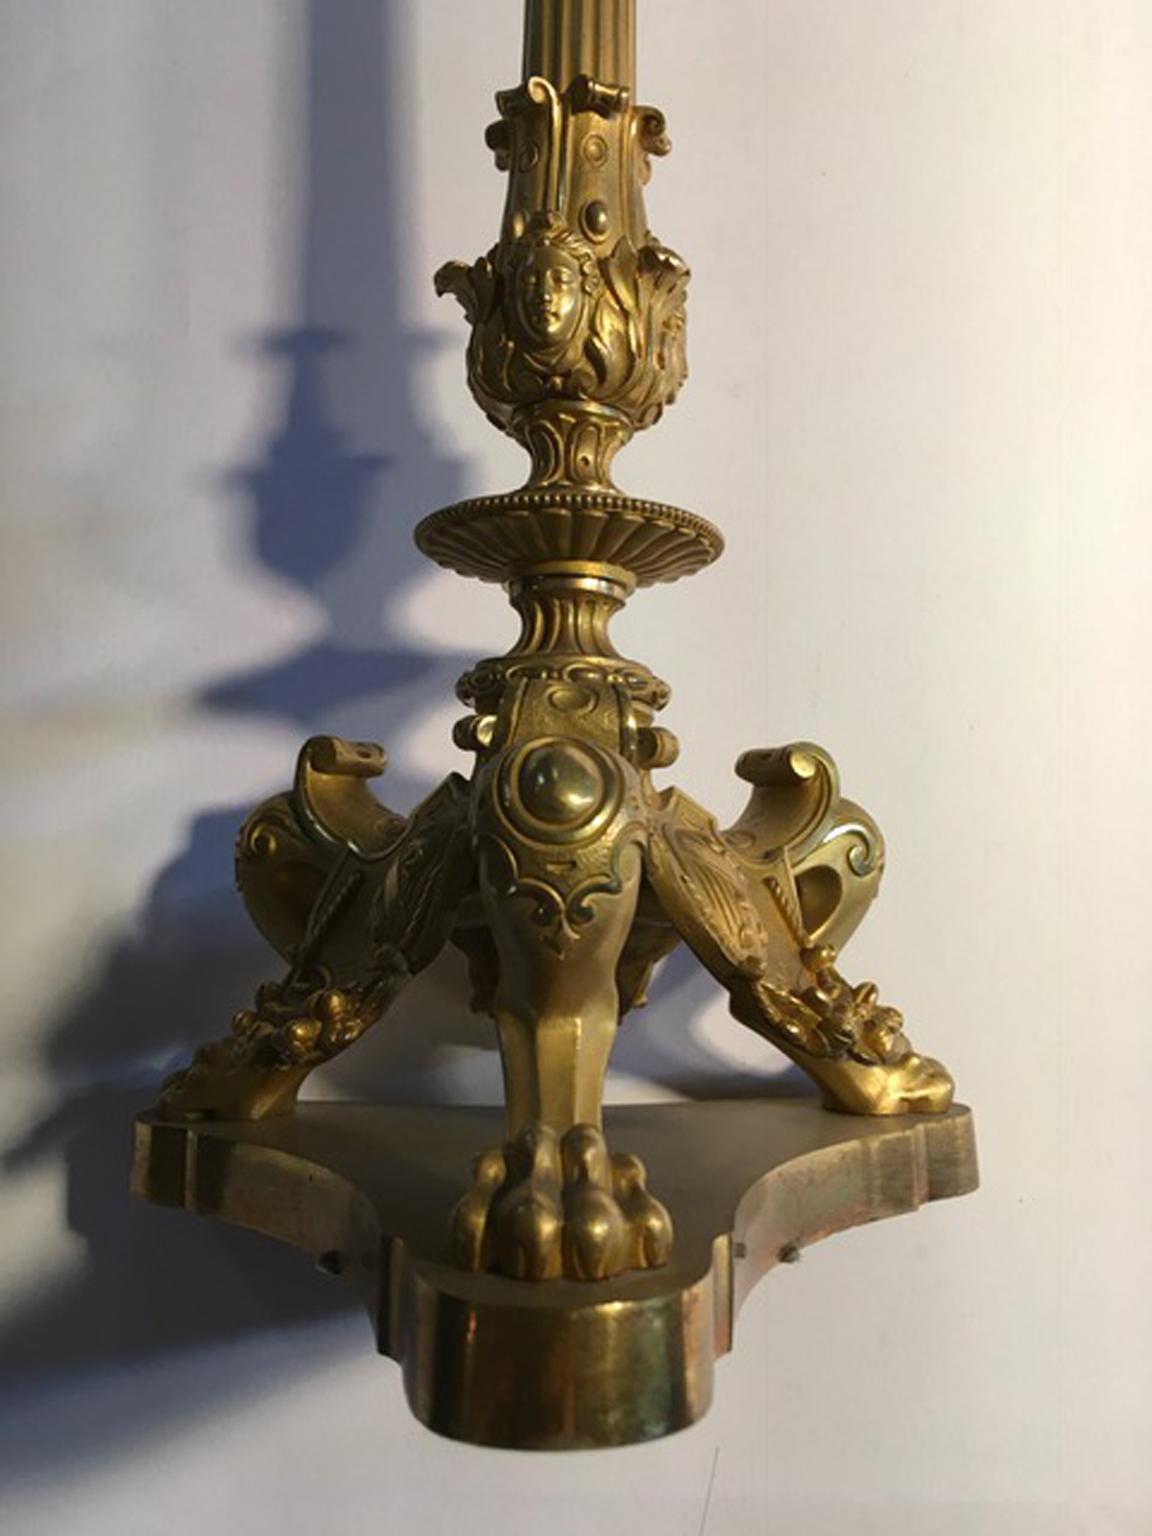 Italie Milieu du 18e siècle  paire de bougeoirs ou lampes de table Empire en laiton à cinq lumières

Cette merveilleuse paire de chandeliers en laiton est un magnifique travail fait à la main par un artisan italien du milieu du 18e siècle. L'emblème